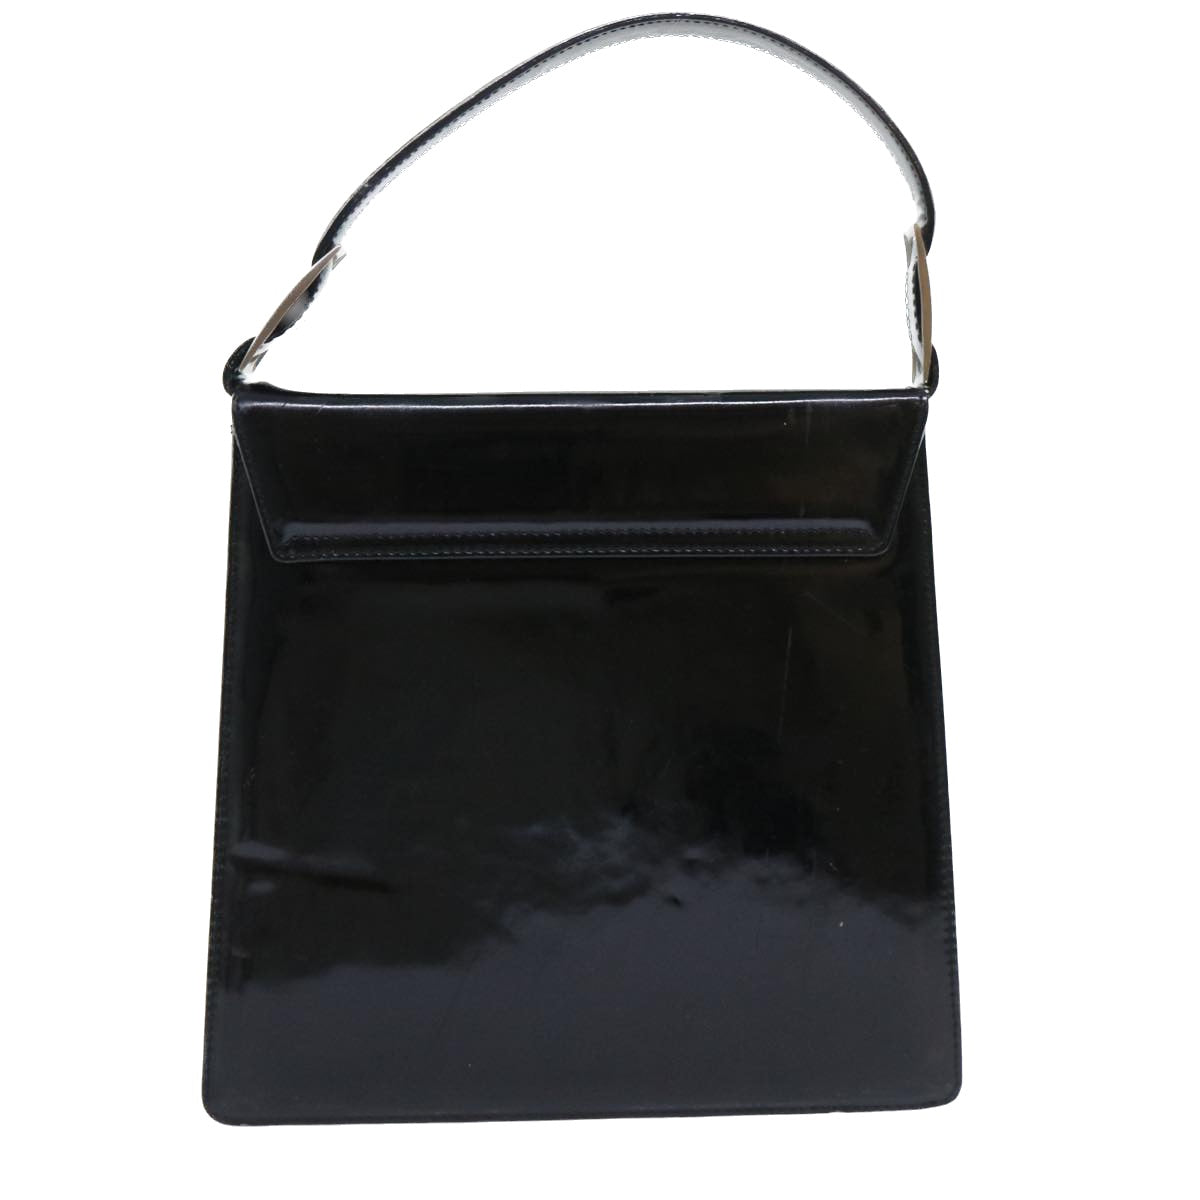 Salvatore Ferragamo Hand Bag Patent leather Black Auth bs8158 - 0